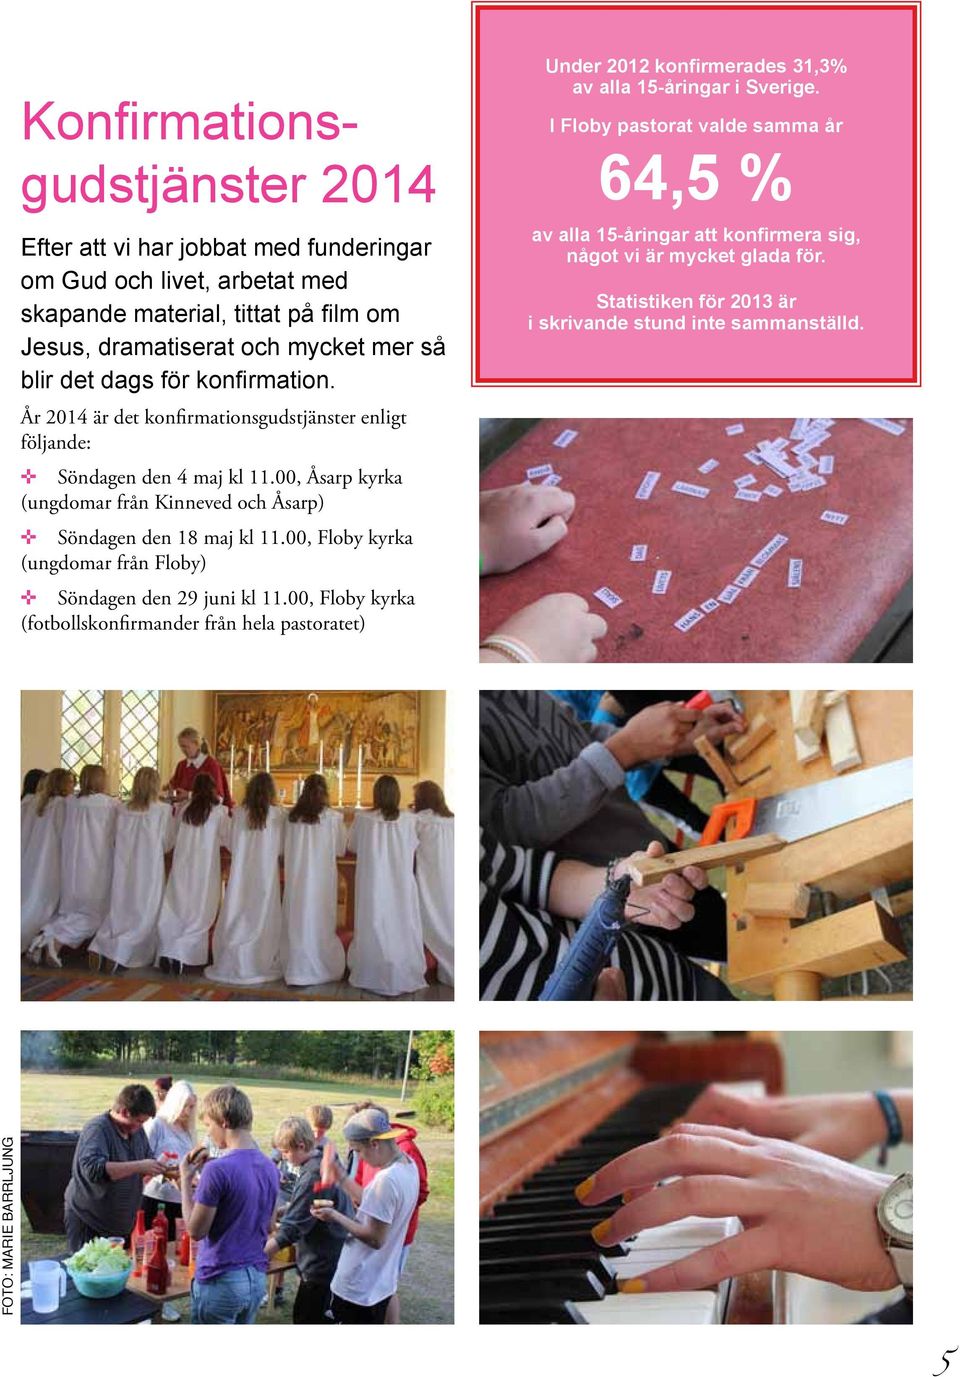 00, Floby kyrka (ungdomar från Floby) Söndagen den 29 juni kl 11.00, Floby kyrka (fotbollskonfirmander från hela pastoratet) Under 2012 konfirmerades 31,3% av alla 15-åringar i Sverige.